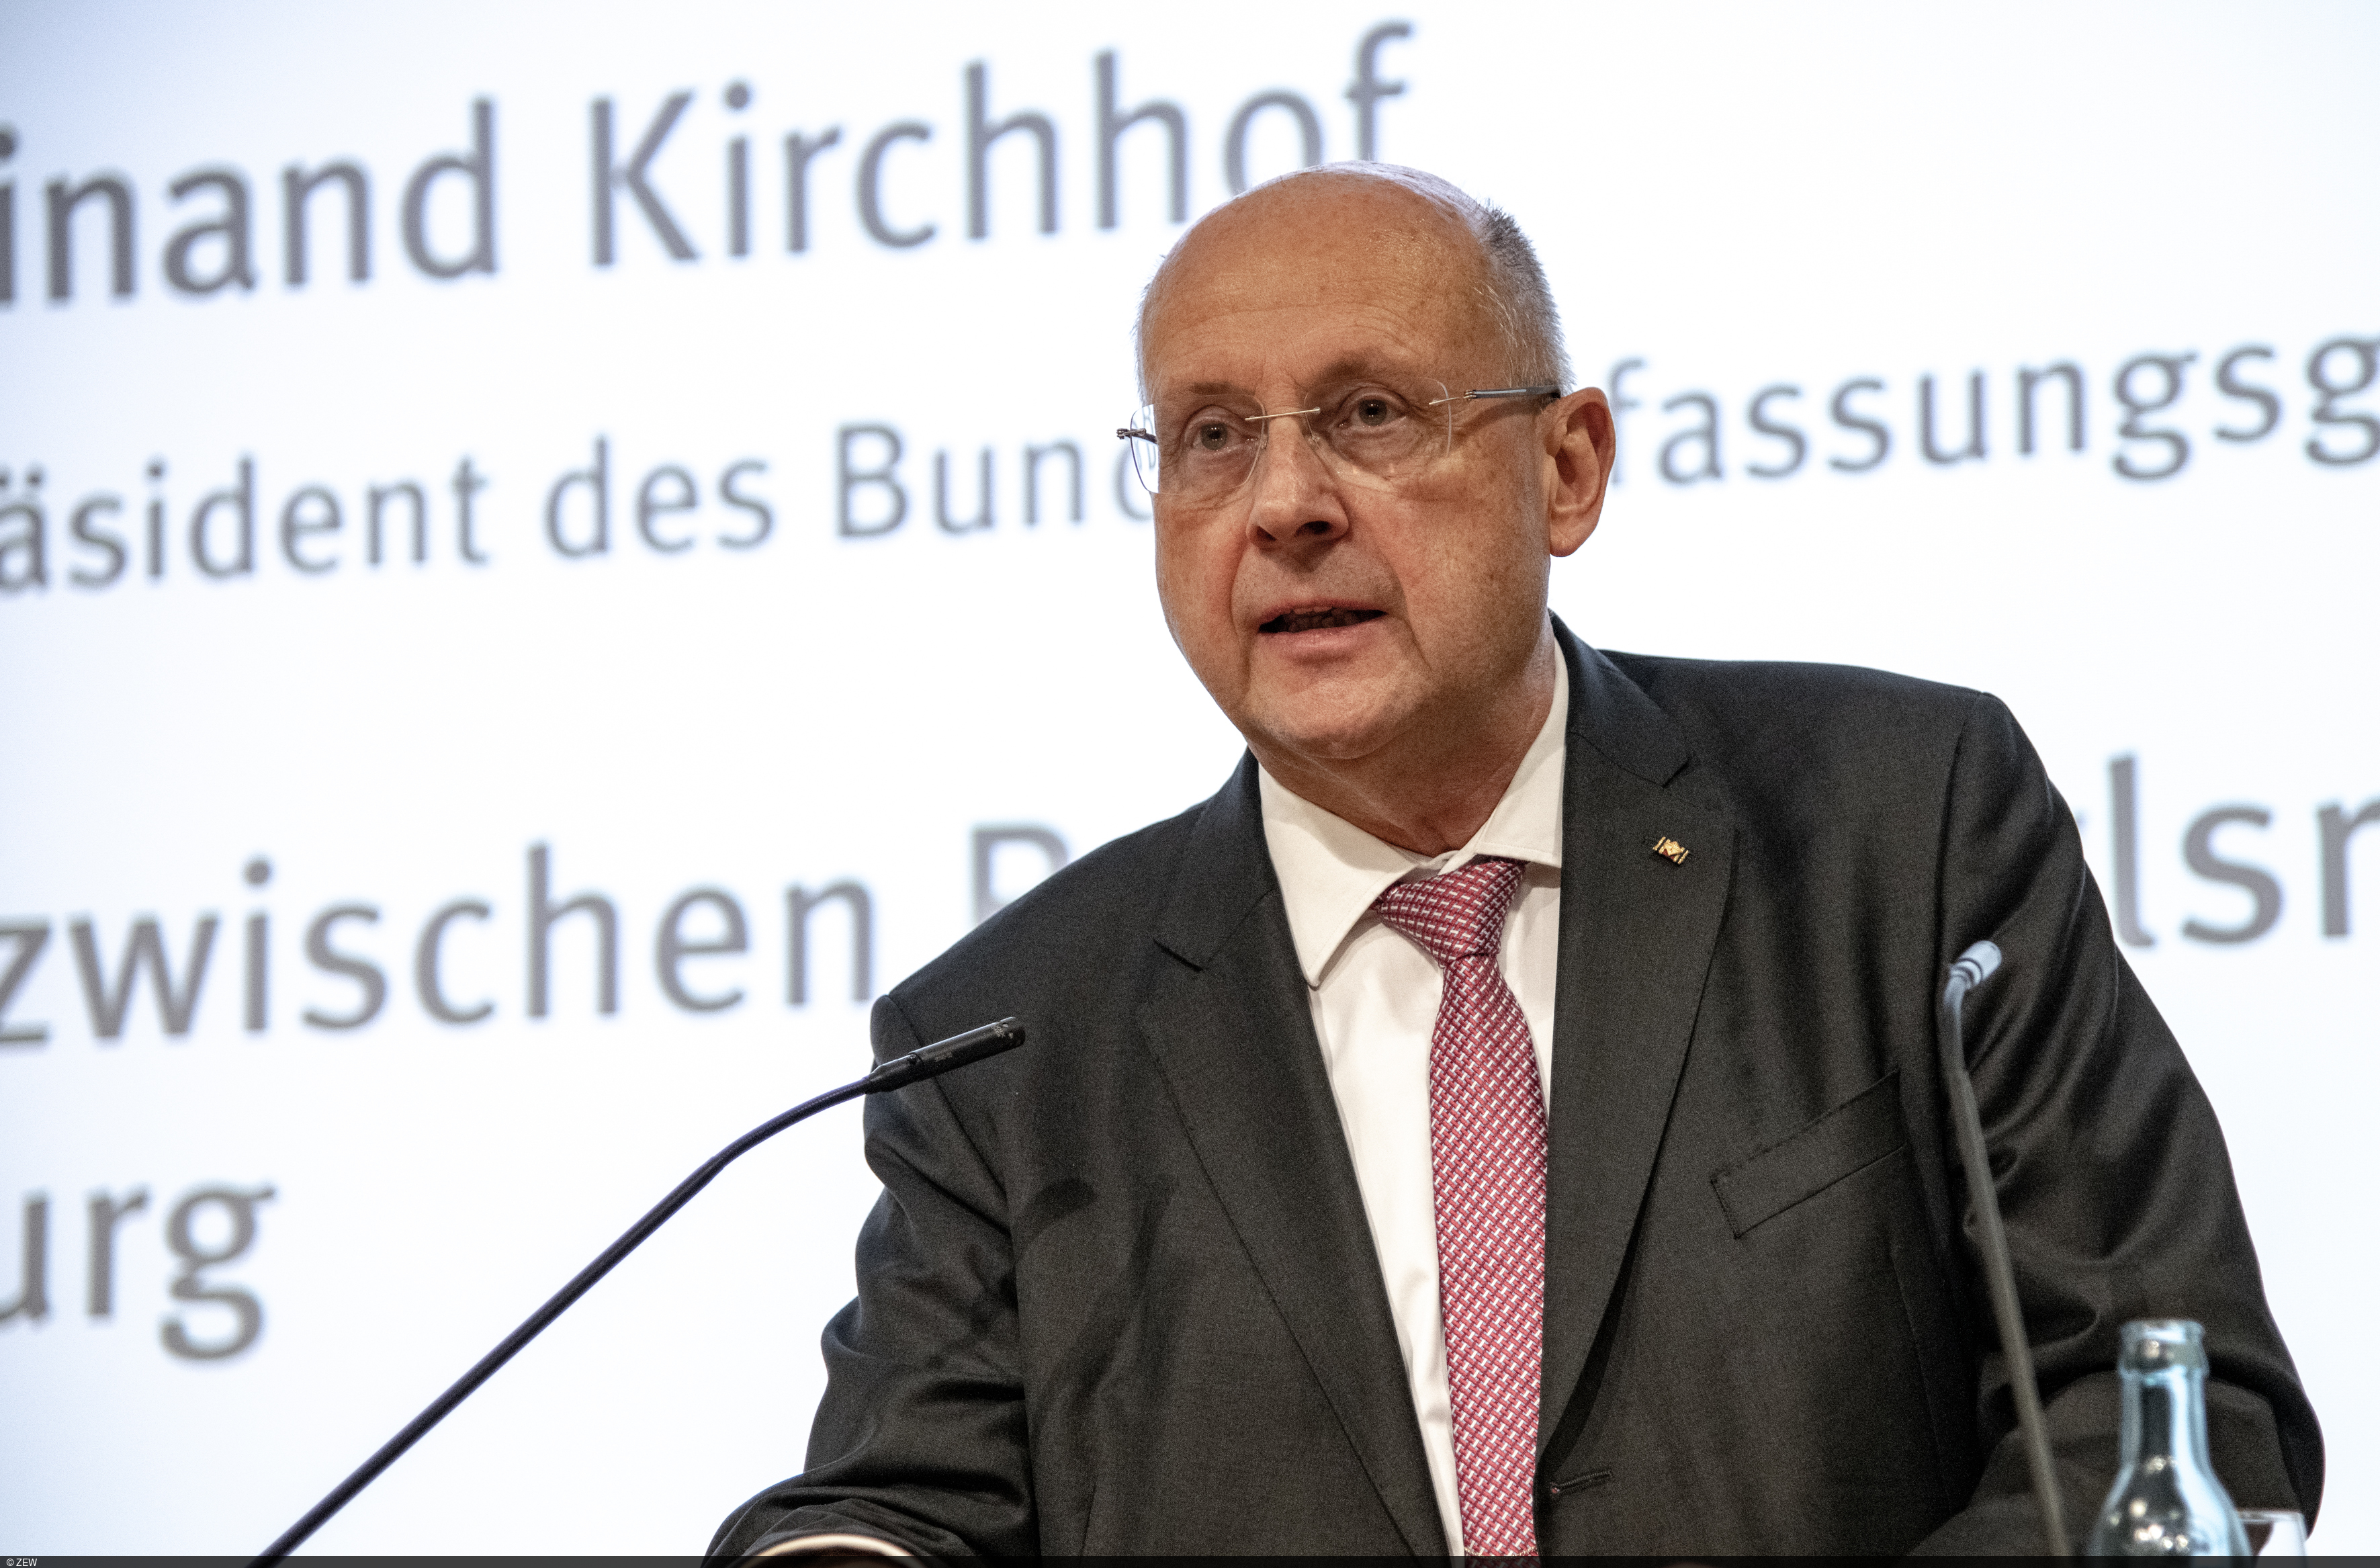 Ehemaliger Bundesverfassungsrichter Ferdinand Kirchhof sprach am ZEW über Steuerrecht in der EU